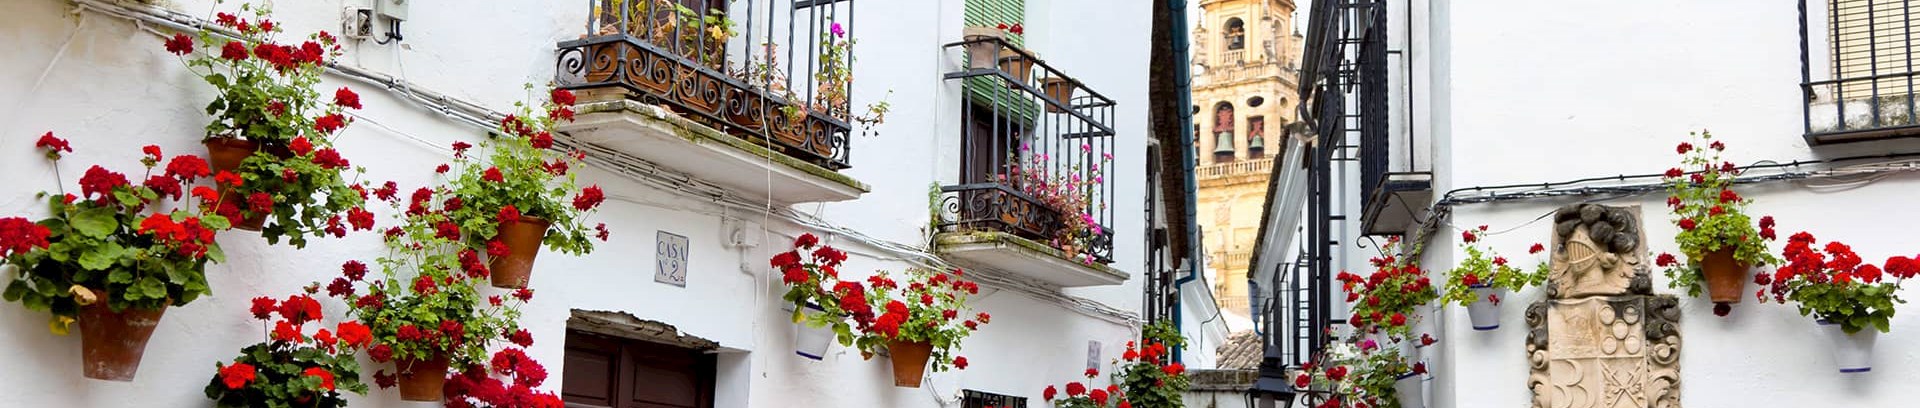 Billede af blomsterkrukker der hænger på hvide huse i en landsby i Spanien